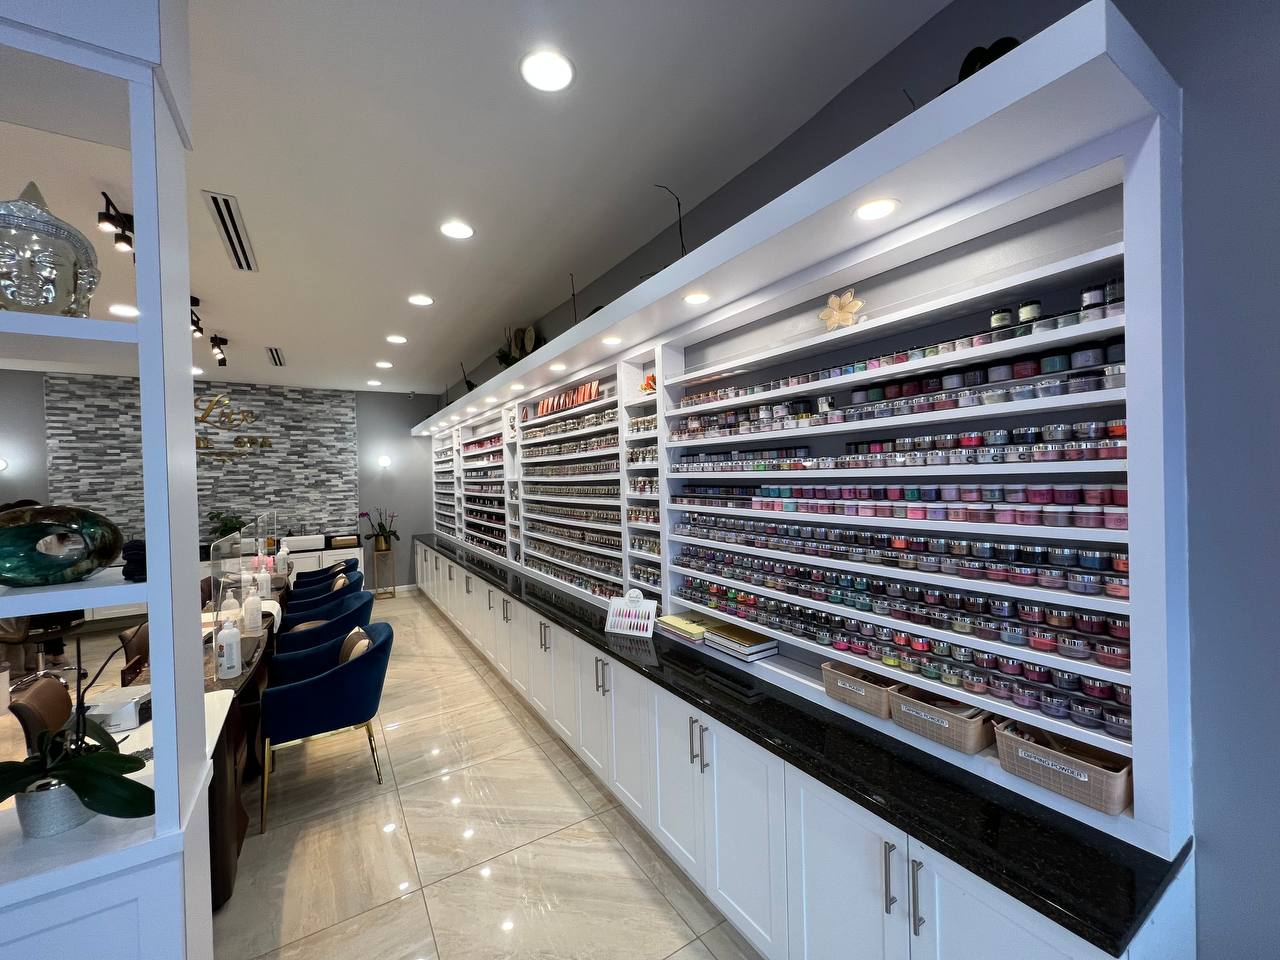 Lux Nails Bar opens its doors in San Antonio